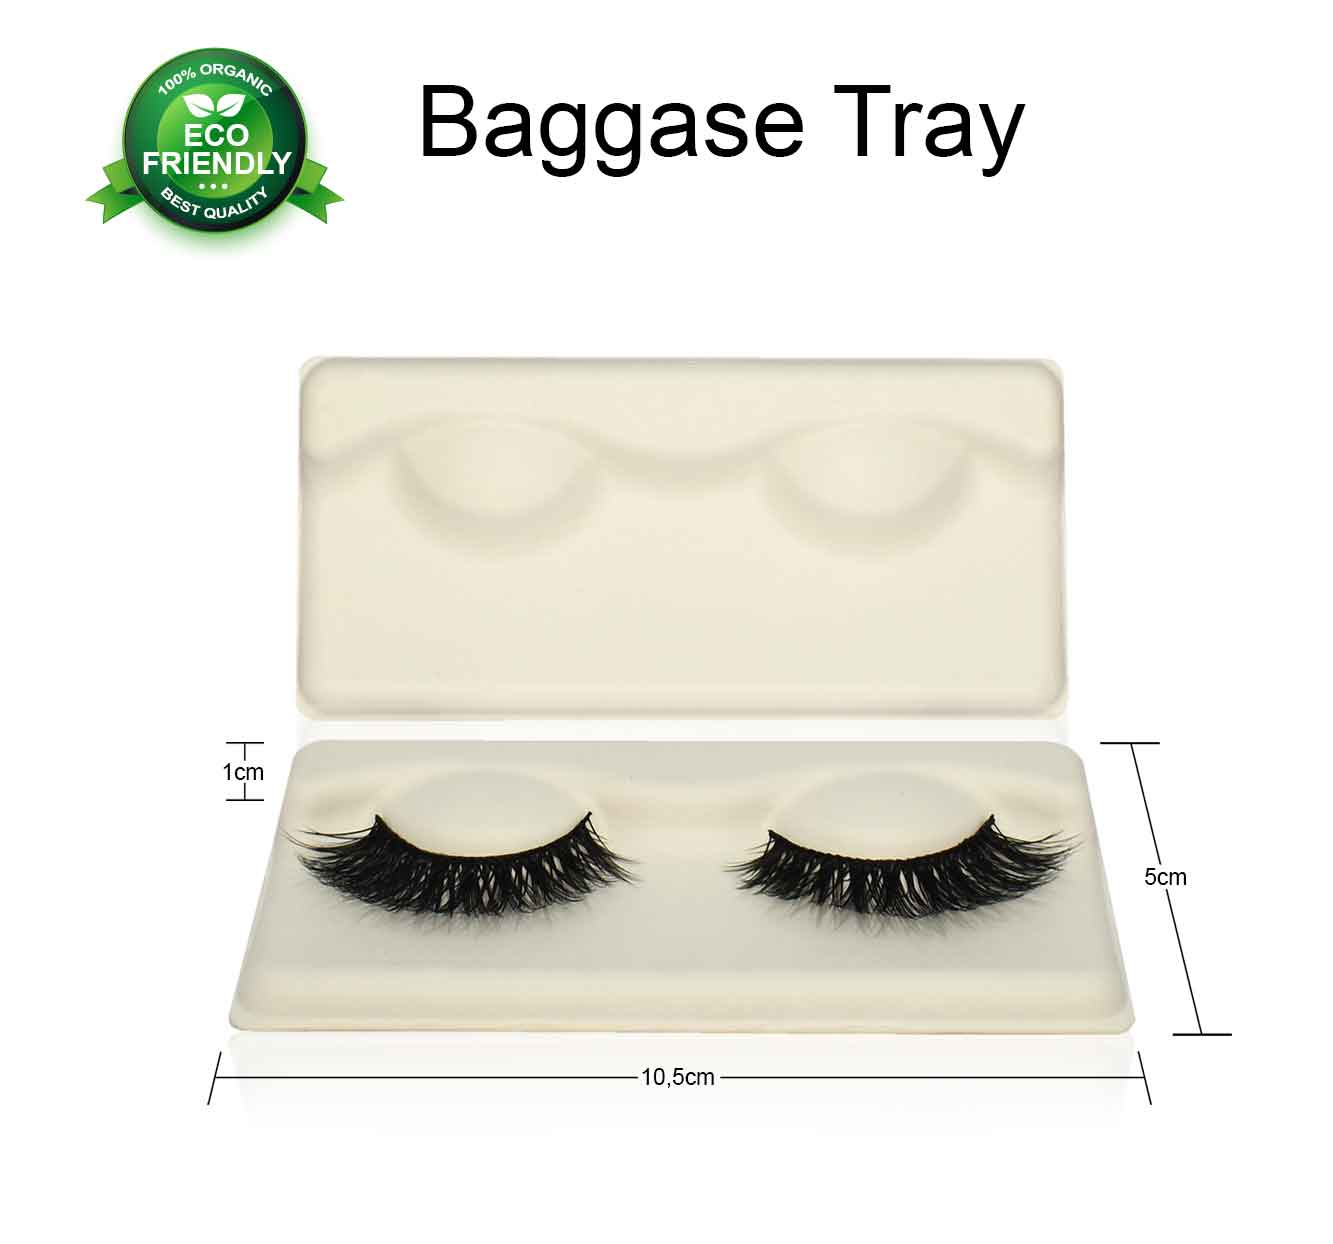 Baggase-Tray-eco-friendly